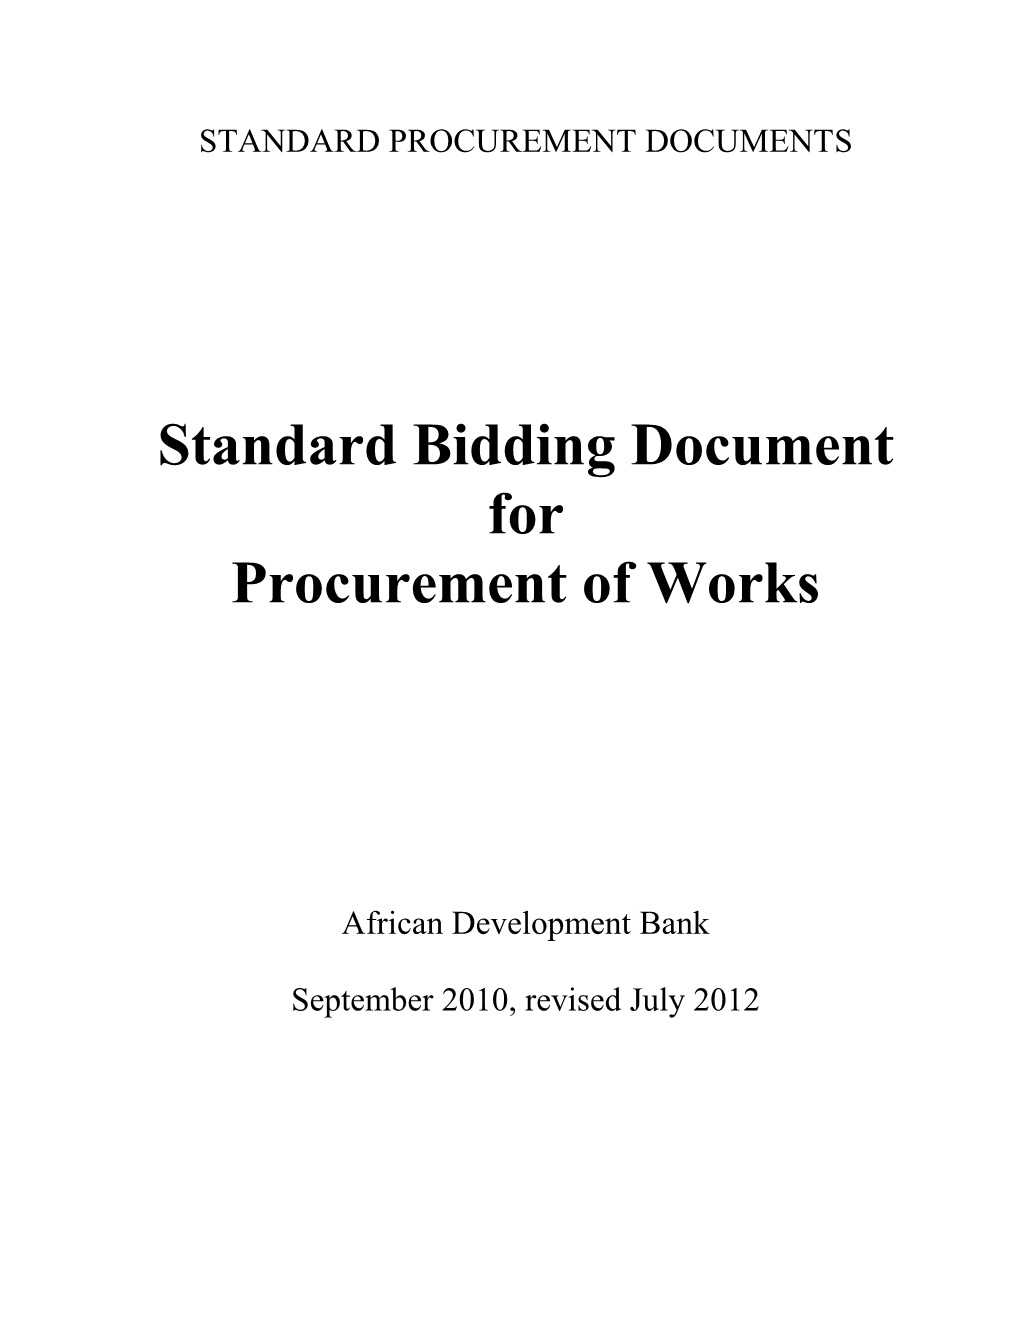 Standard Bidding Document for Procurement of Works - September 2010, Revised July 2012